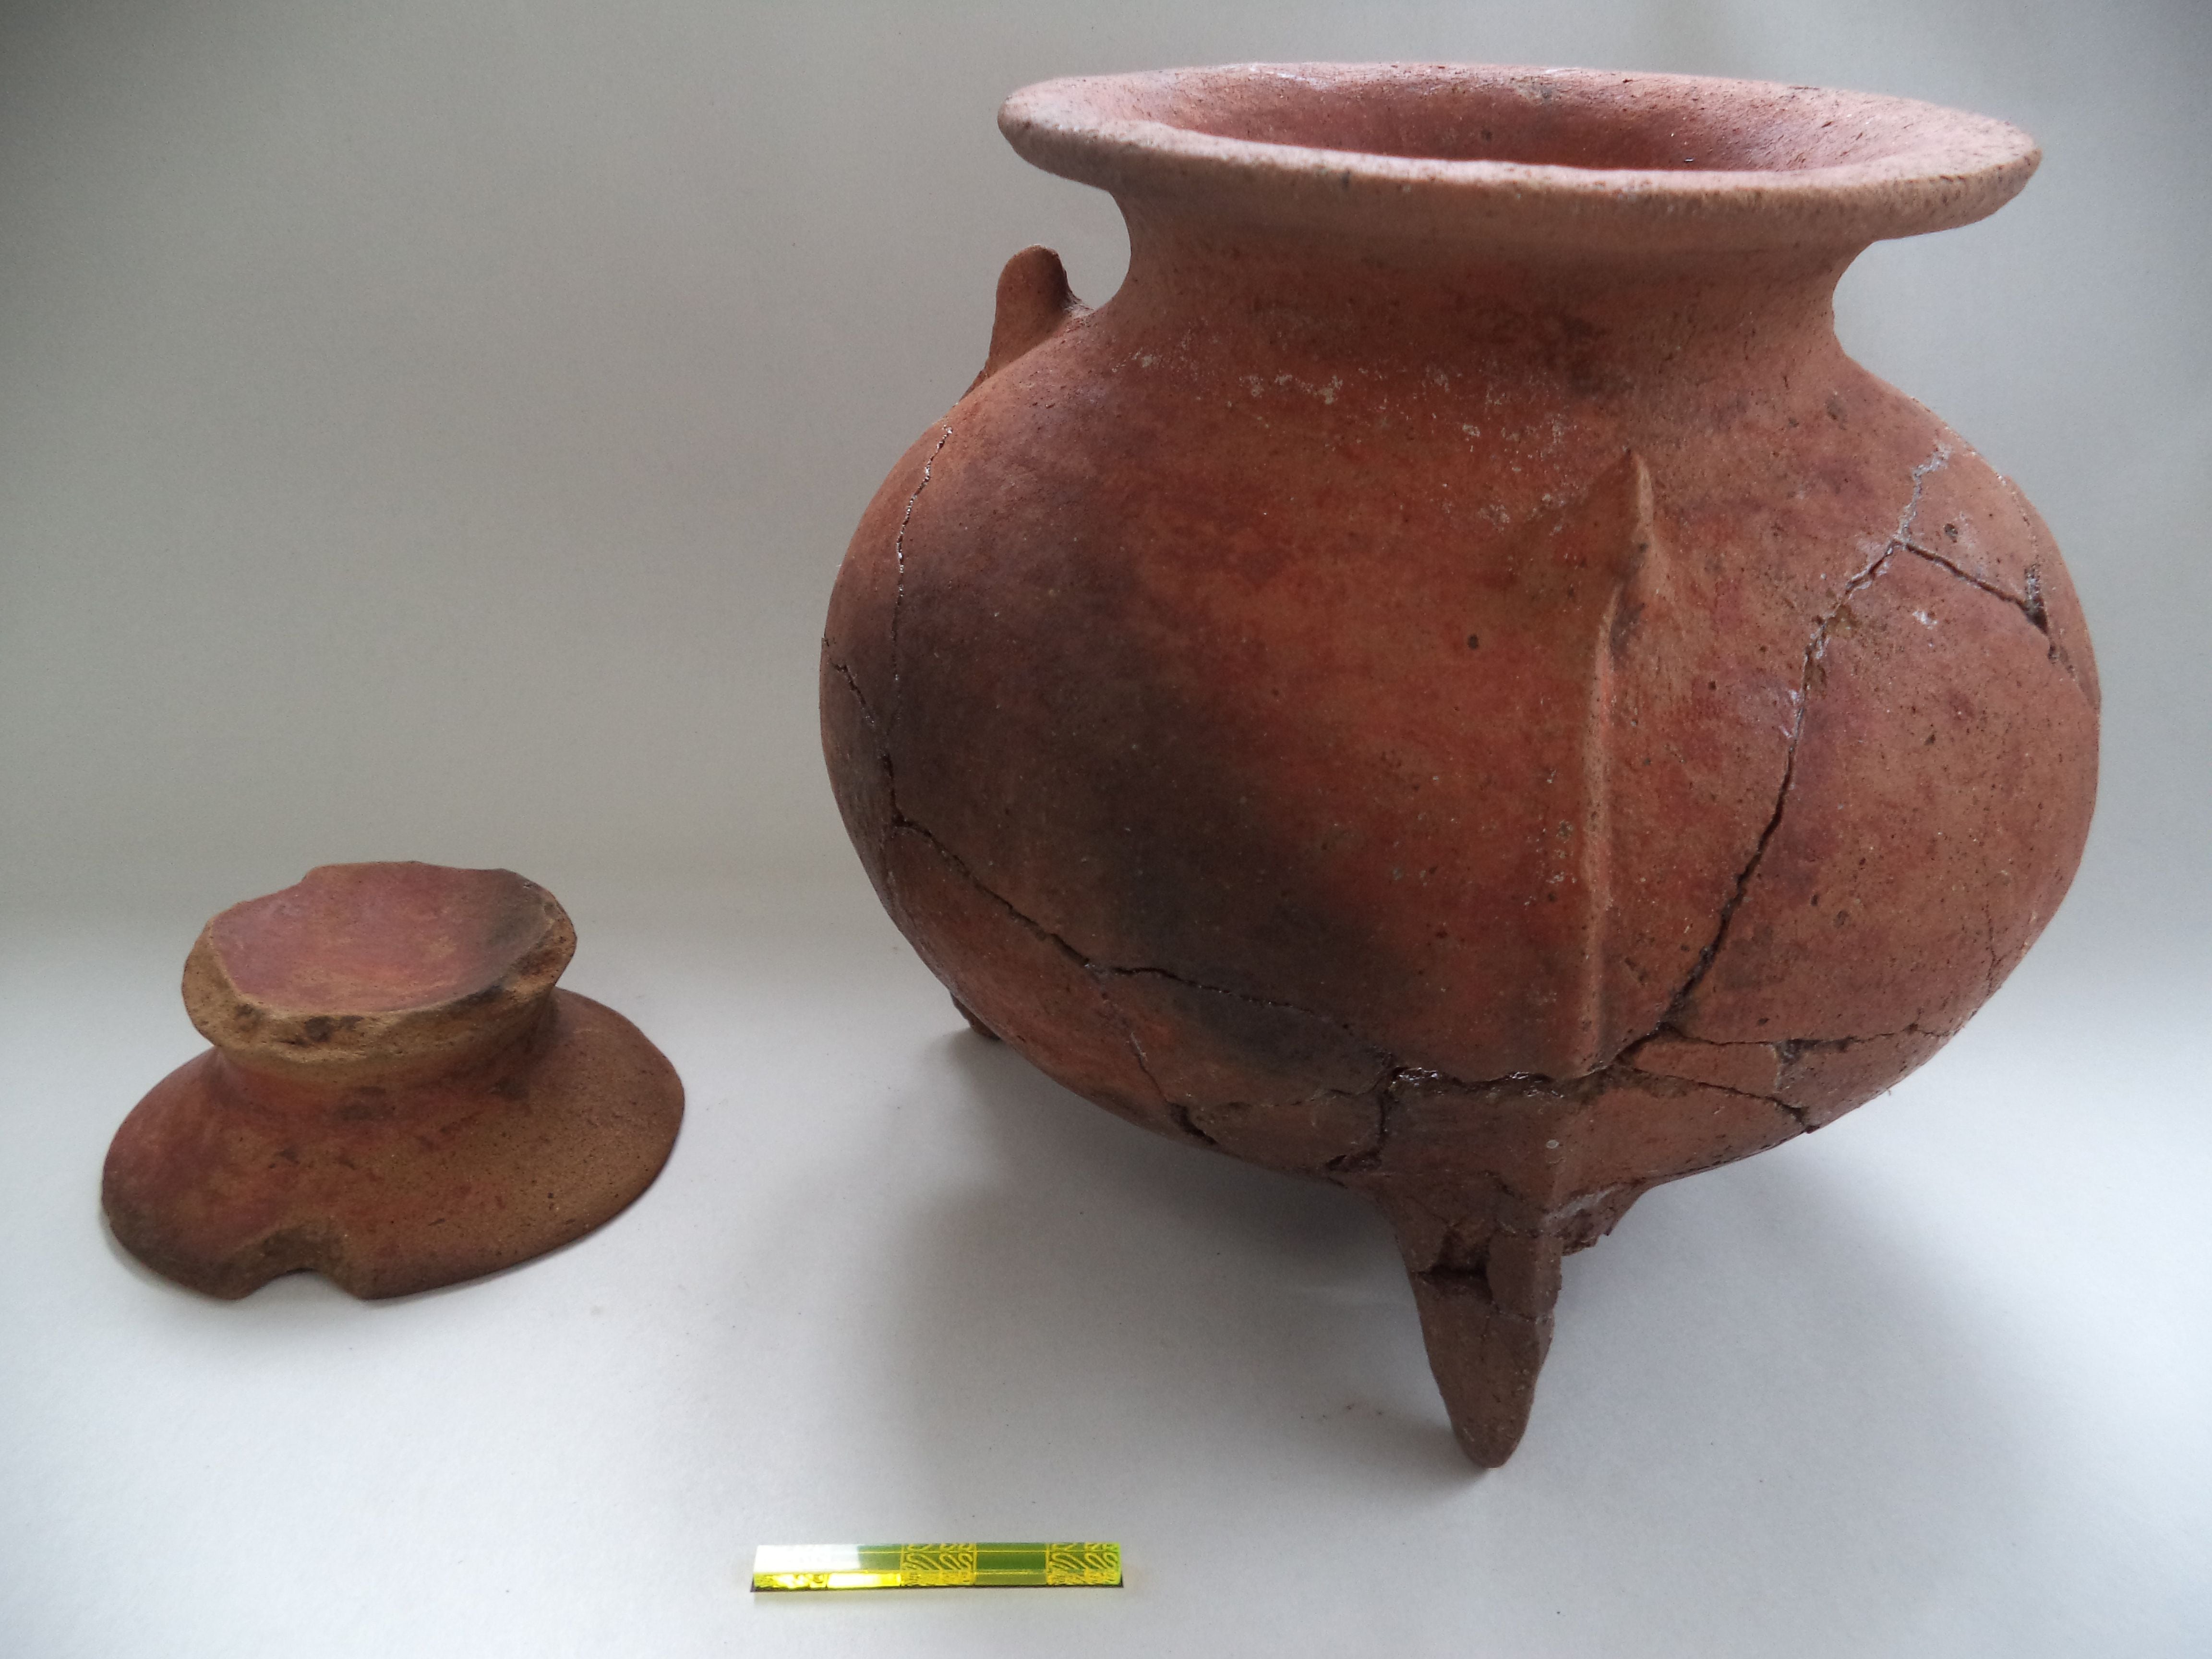 Estas fueron vasijas encontradas en contexto doméstico.

Fotografía: Mauricio Murillo